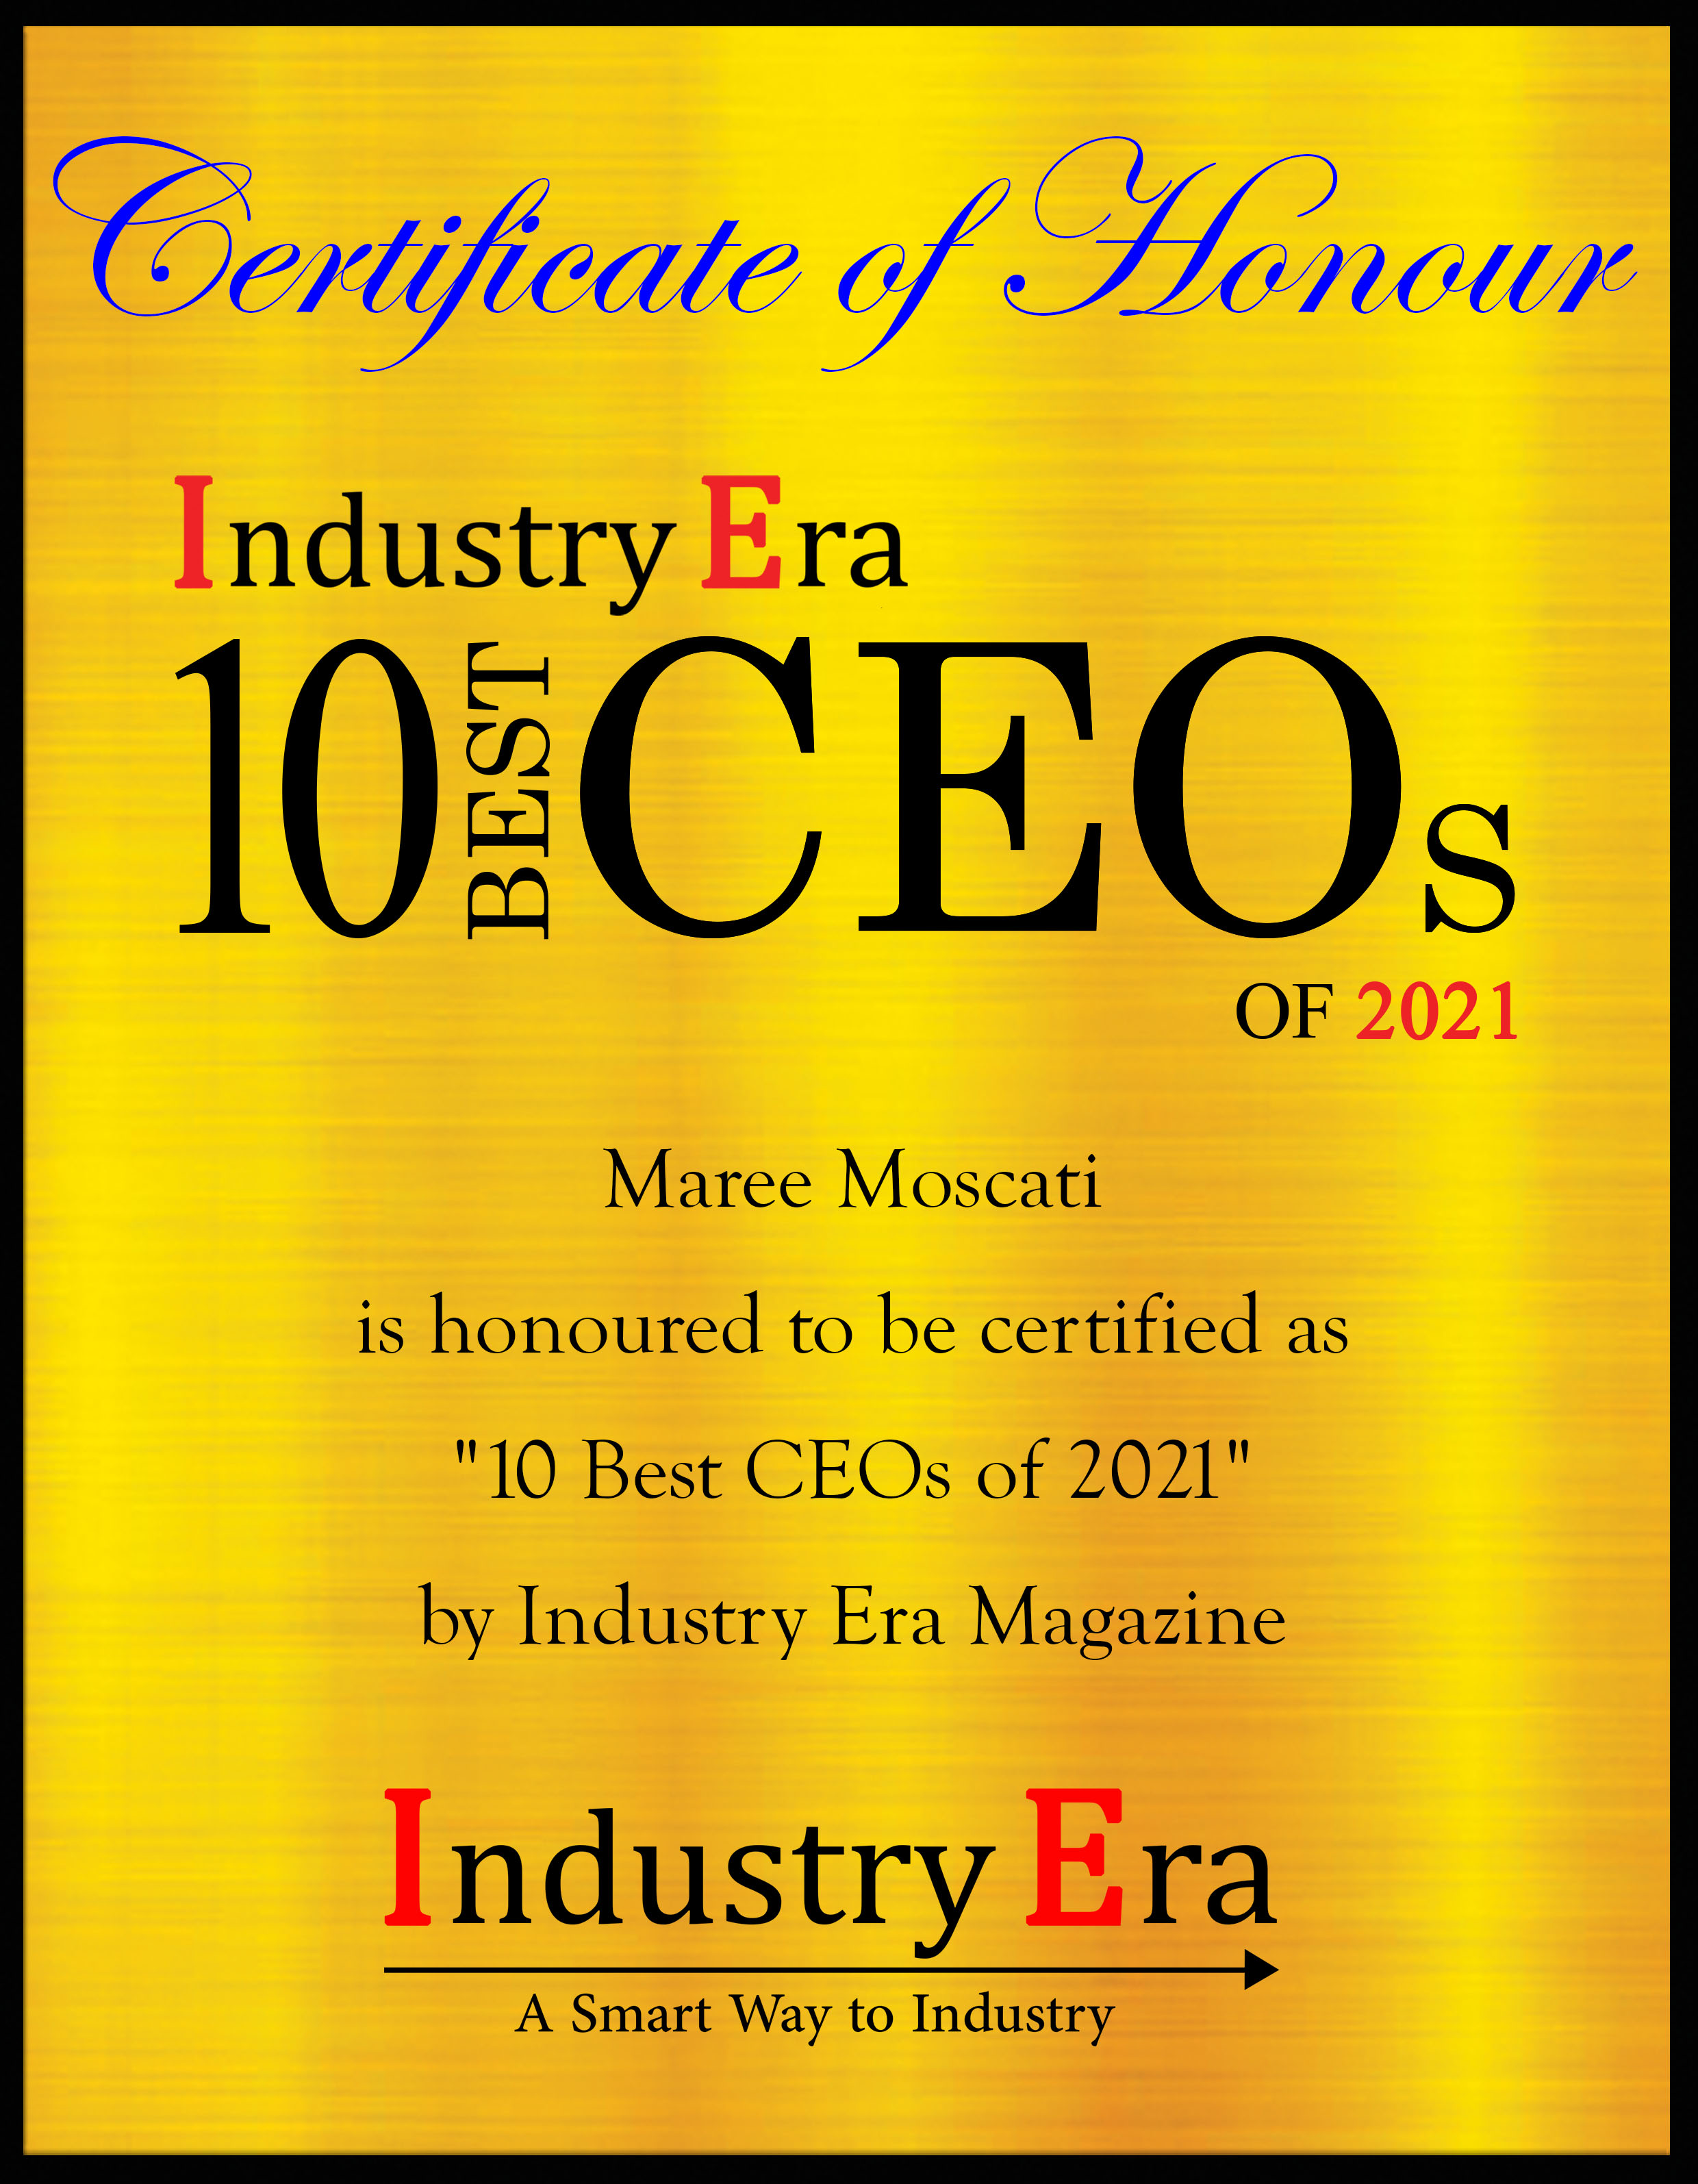 Maree Moscati CEO CopyTalk, Best CEOs of 2021